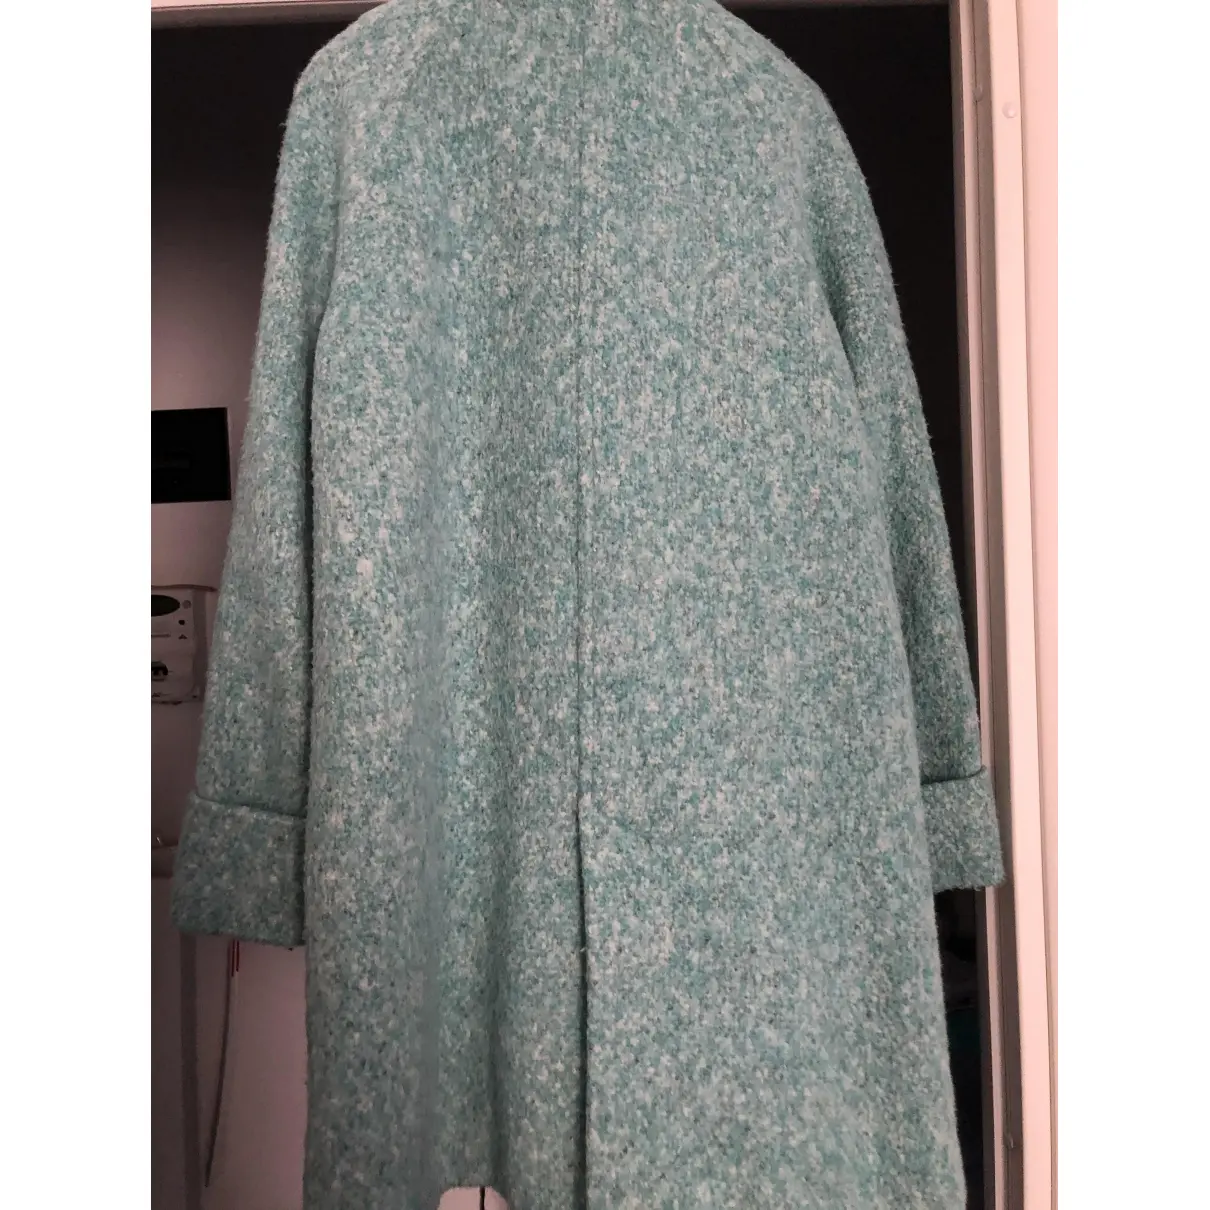 Buy Zara Wool coat online